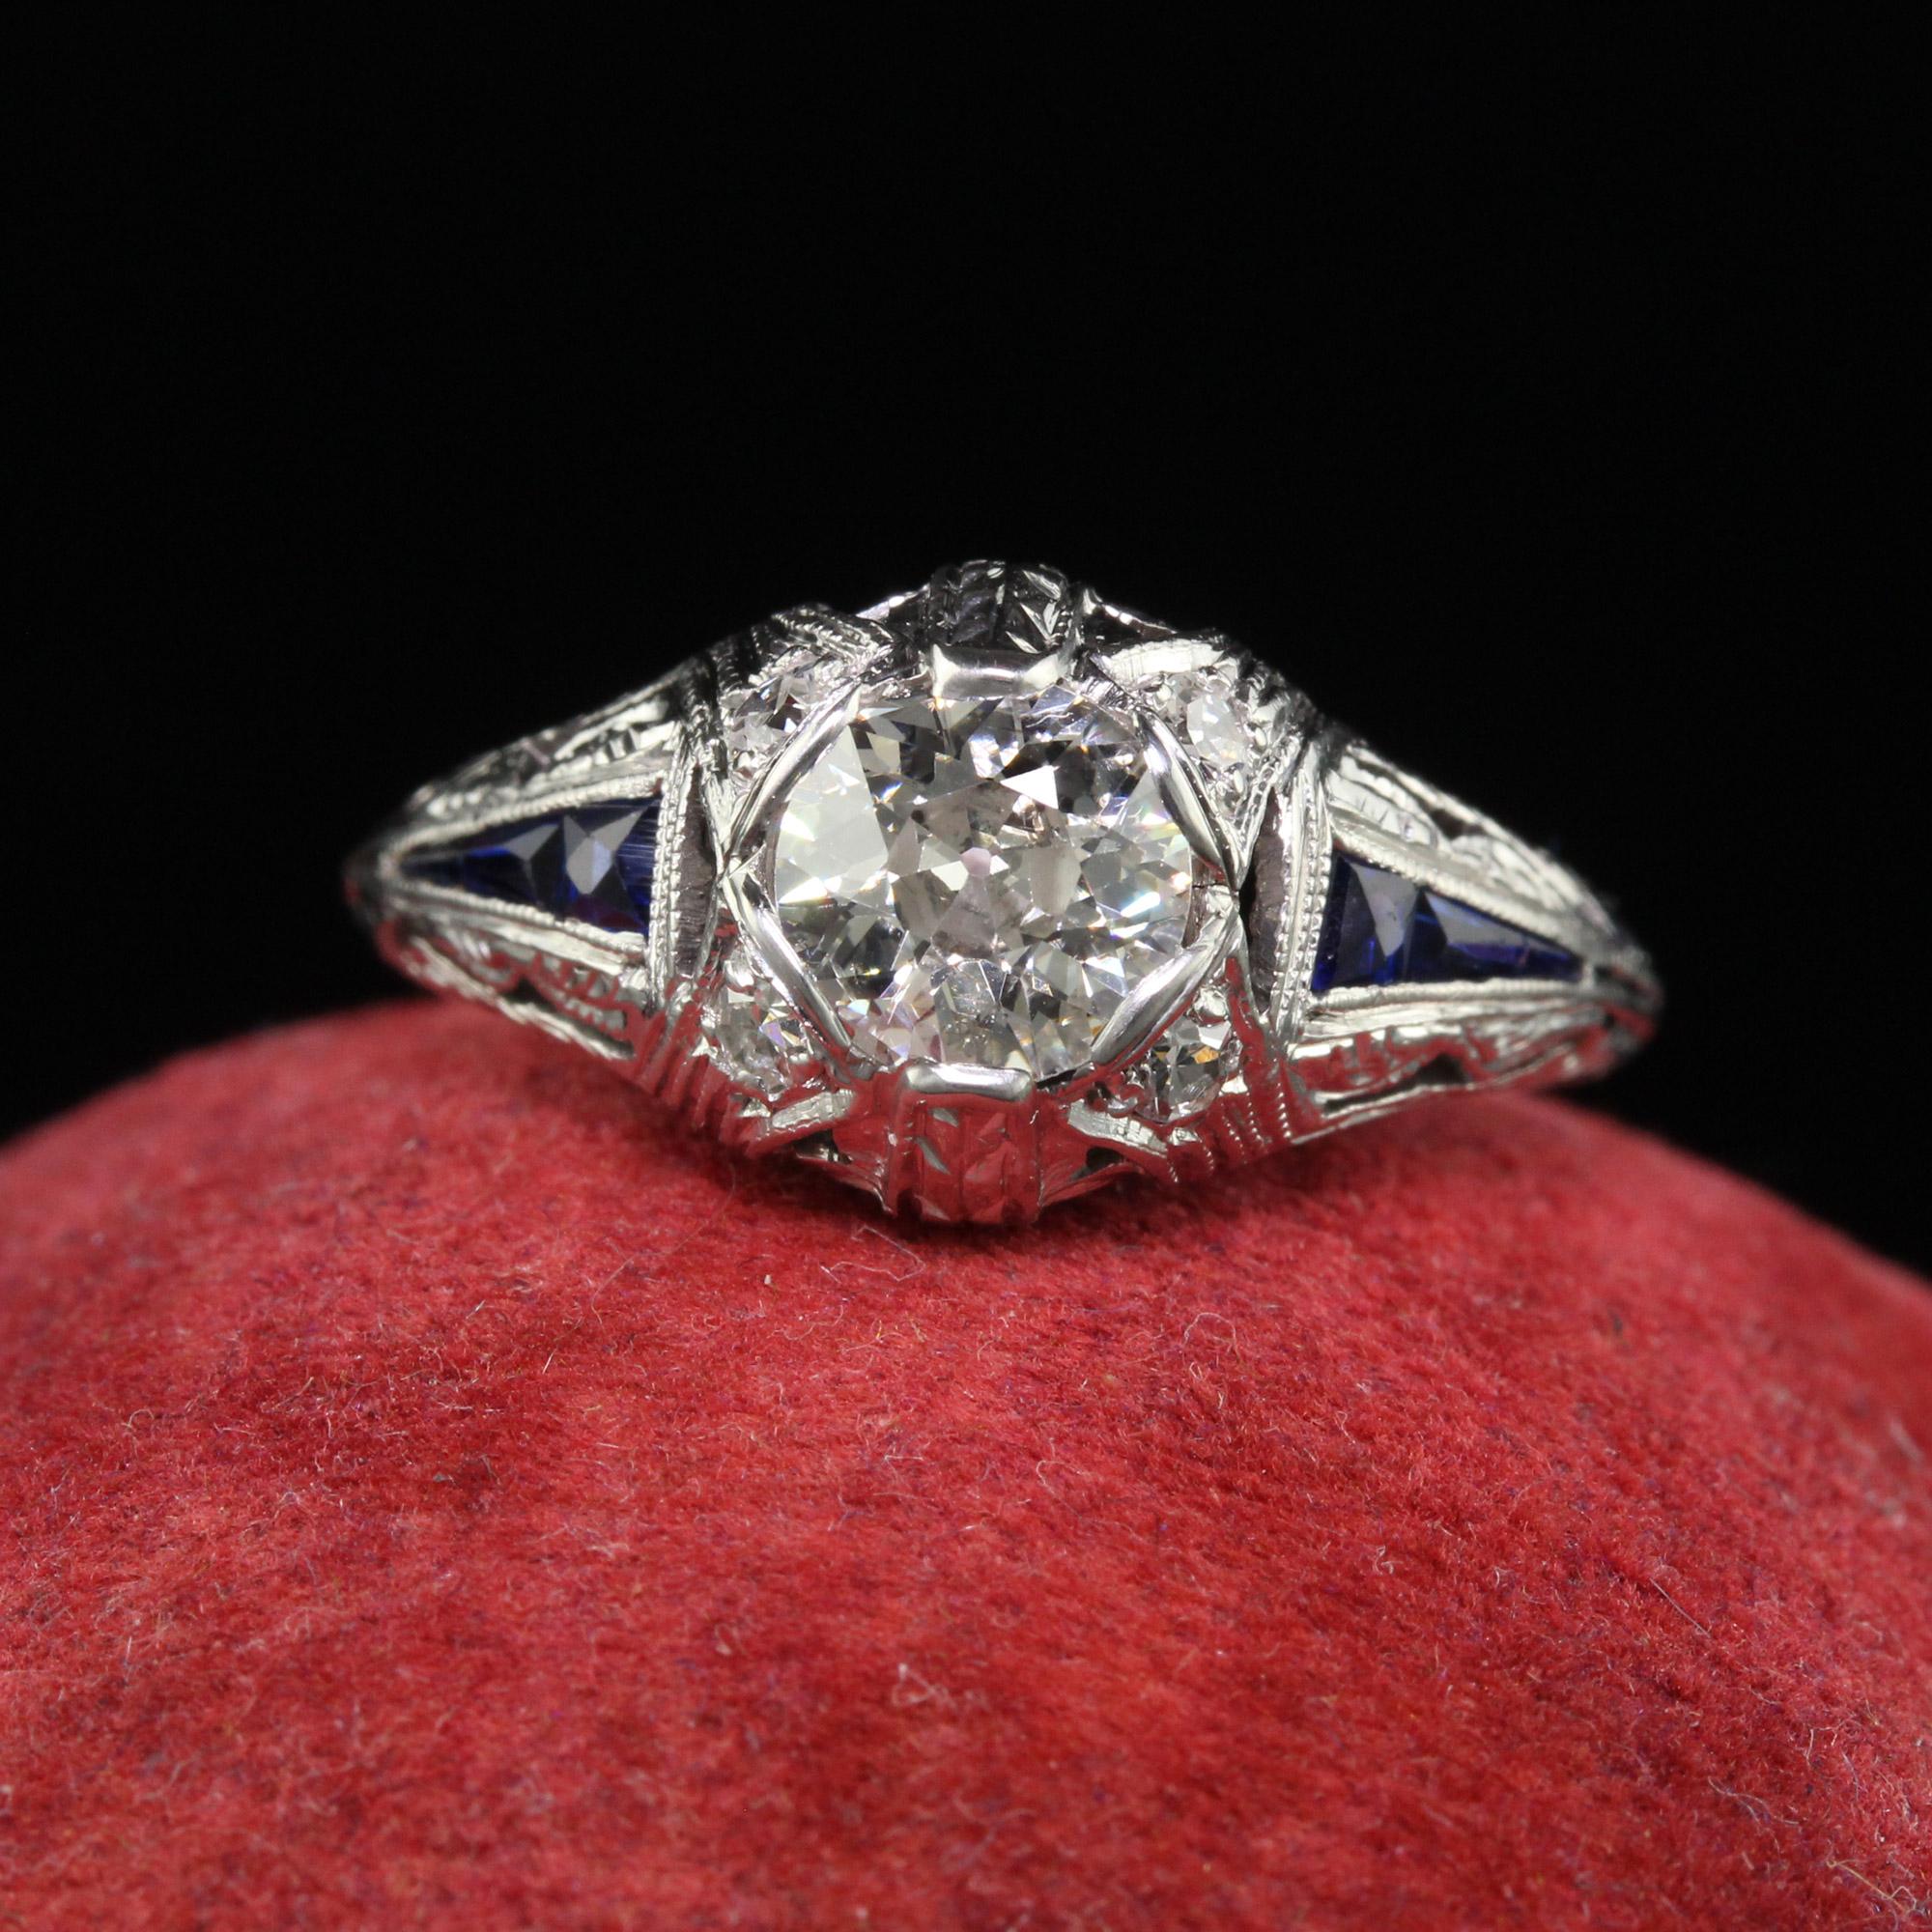 Schöner antiker Art Deco Platin Alt Euro Diamant Saphir Verlobungsring. Dieser wunderschöne Art-Deco-Verlobungsring ist aus Platin gefertigt. In der Mitte befindet sich ein wunderschöner Diamant im alten europäischen Schliff, der in eine